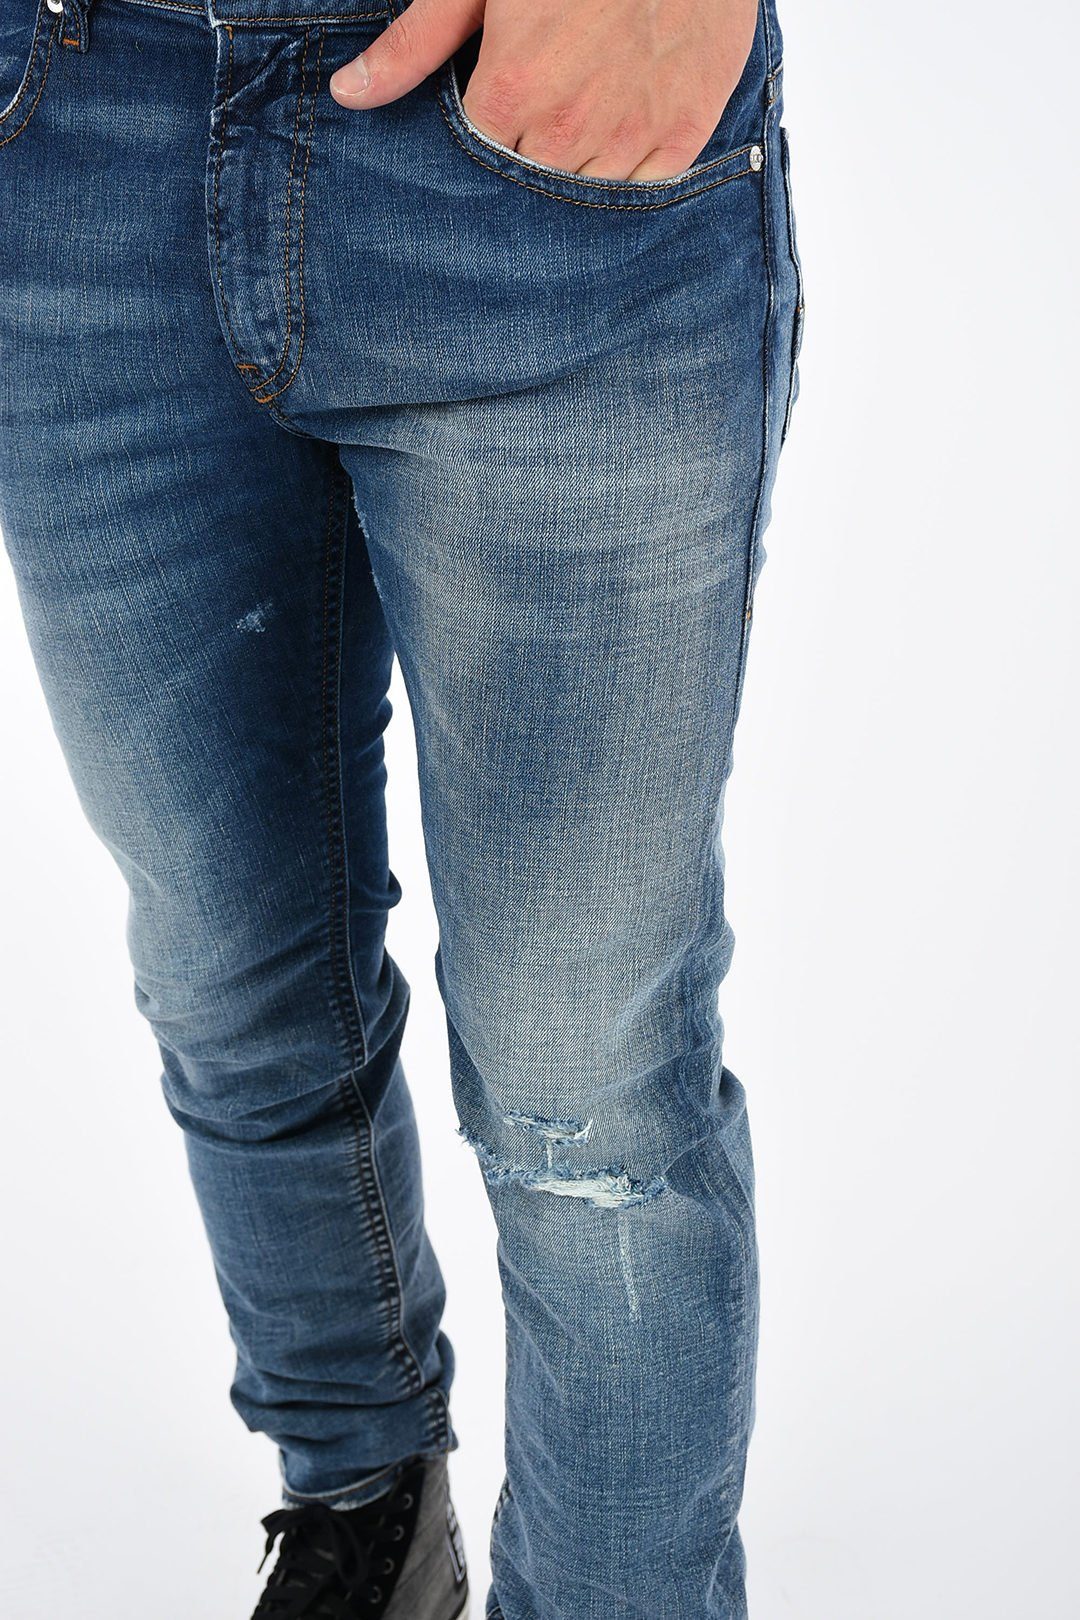 084TW Herren Slim-fit-Jeans Stretch, Used-Look, Länge: 5-Pocket-Style, Thommer Blau, Röhrenjeans, Vintage Diesel L32